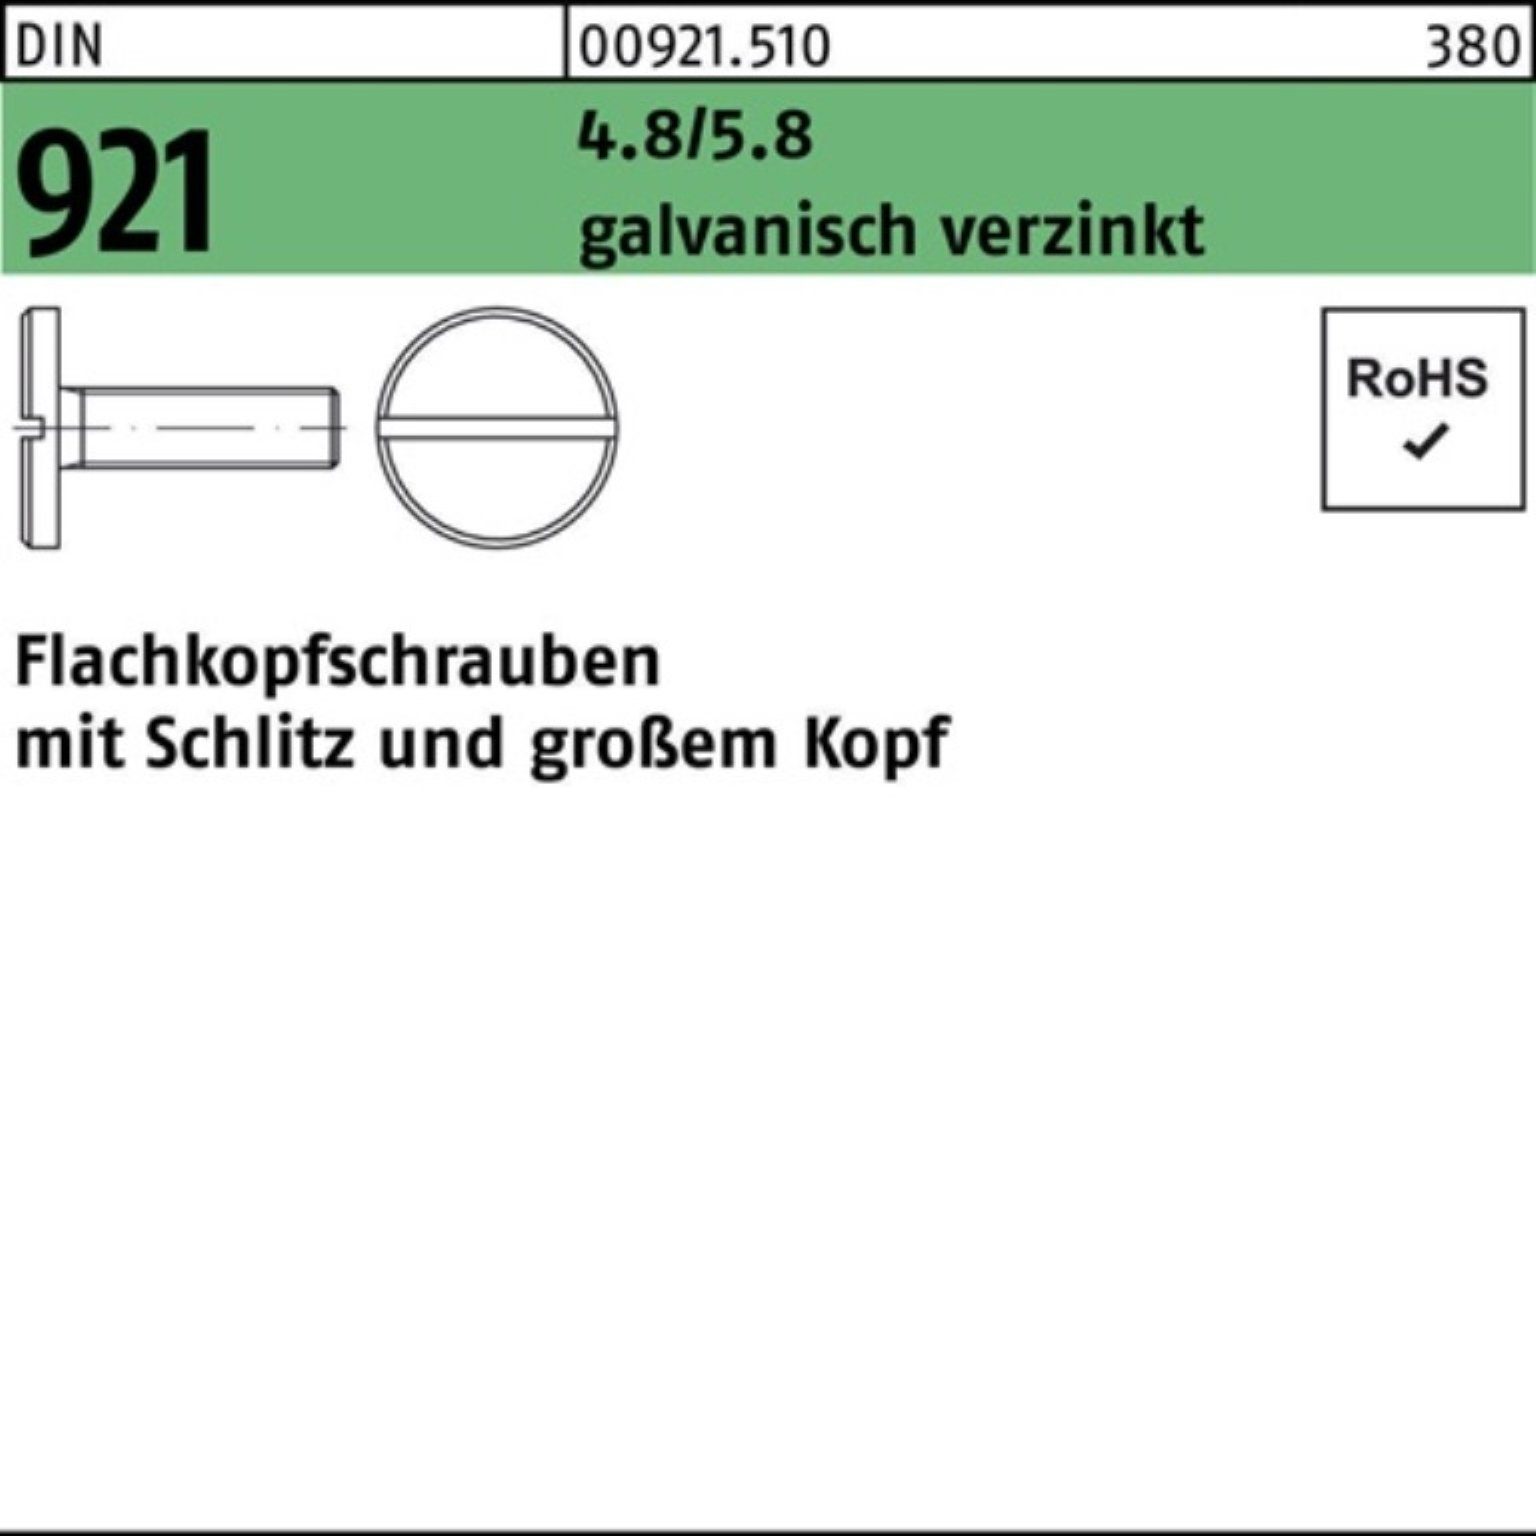 galv.verz. Schlitz 6 Flachkopfschraube Schraube Reyher DIN 100er 921 4.8/5.8 M5x Pack